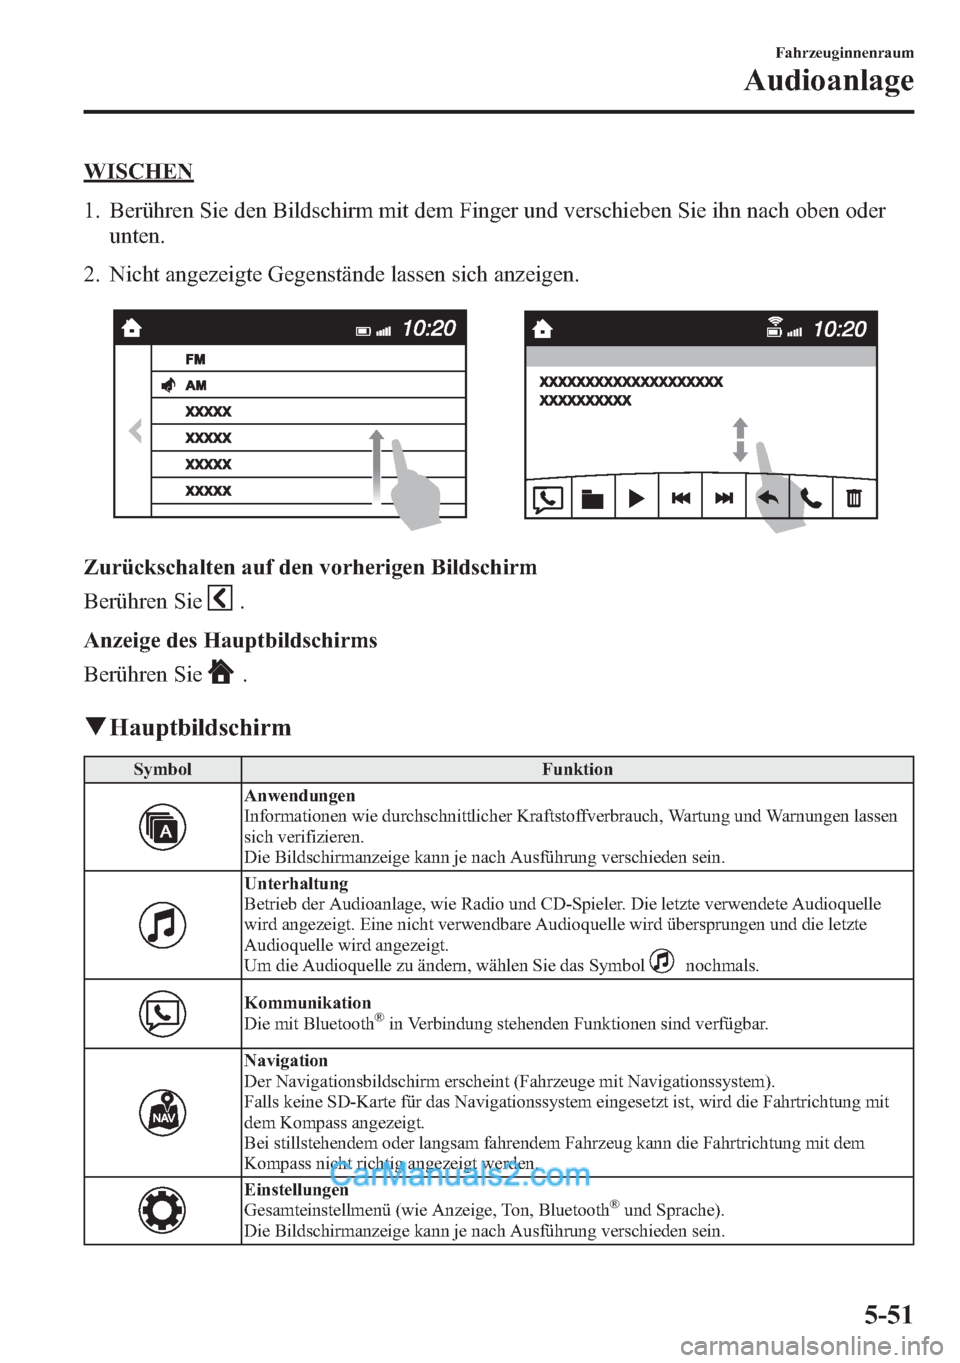 MAZDA MODEL CX-5 2015  Betriebsanleitung (in German) WISCHEN
1. Berühren Sie den Bildschirm mit dem Finger und verschieben Sie ihn nach oben oder
unten.
2. Nicht angezeigte Gegenstände lassen sich anzeigen.
Zurückschalten auf den vorherigen Bildschir